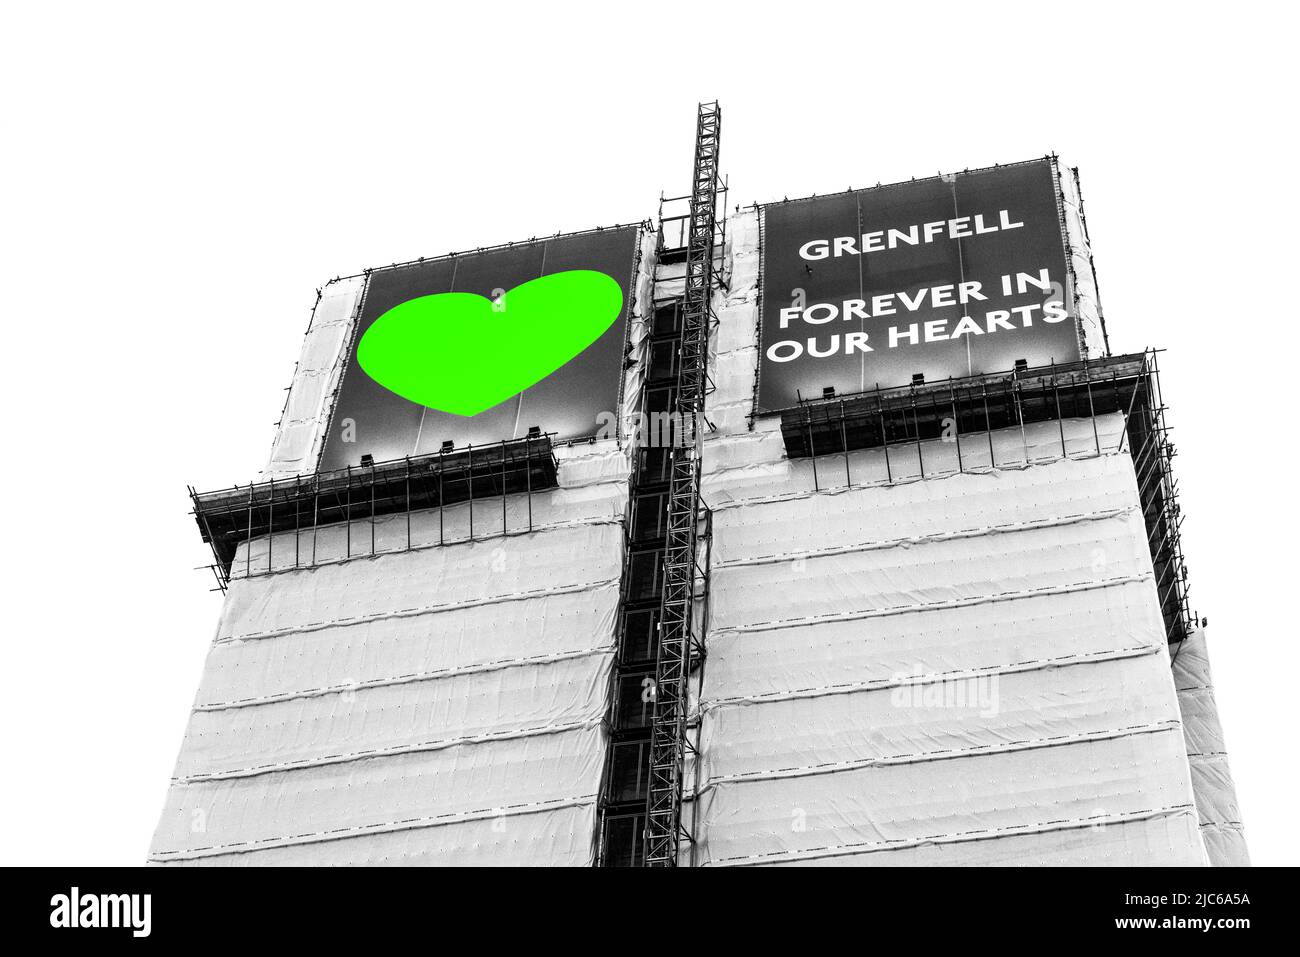 Immagine del giugno 2019 scattata poco dopo il servizio commemorativo alla Torre di Grenfell. Bianco e nero con cuore verde di Grenfell. Foto Stock